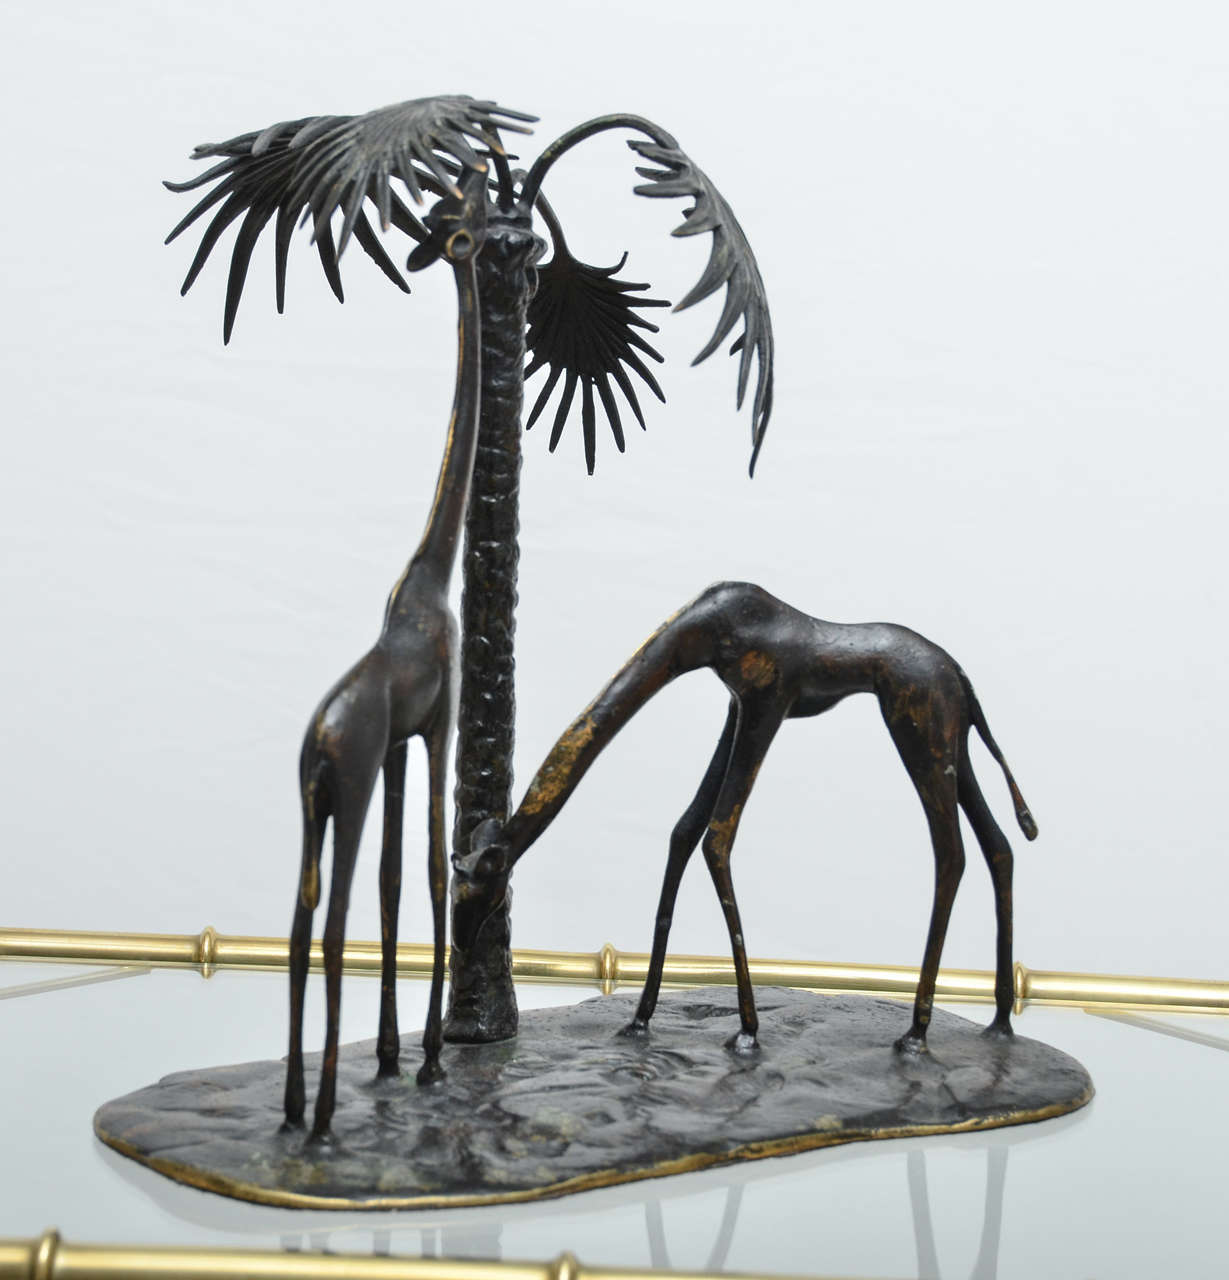 Sculpted bronze giraffe vignette.